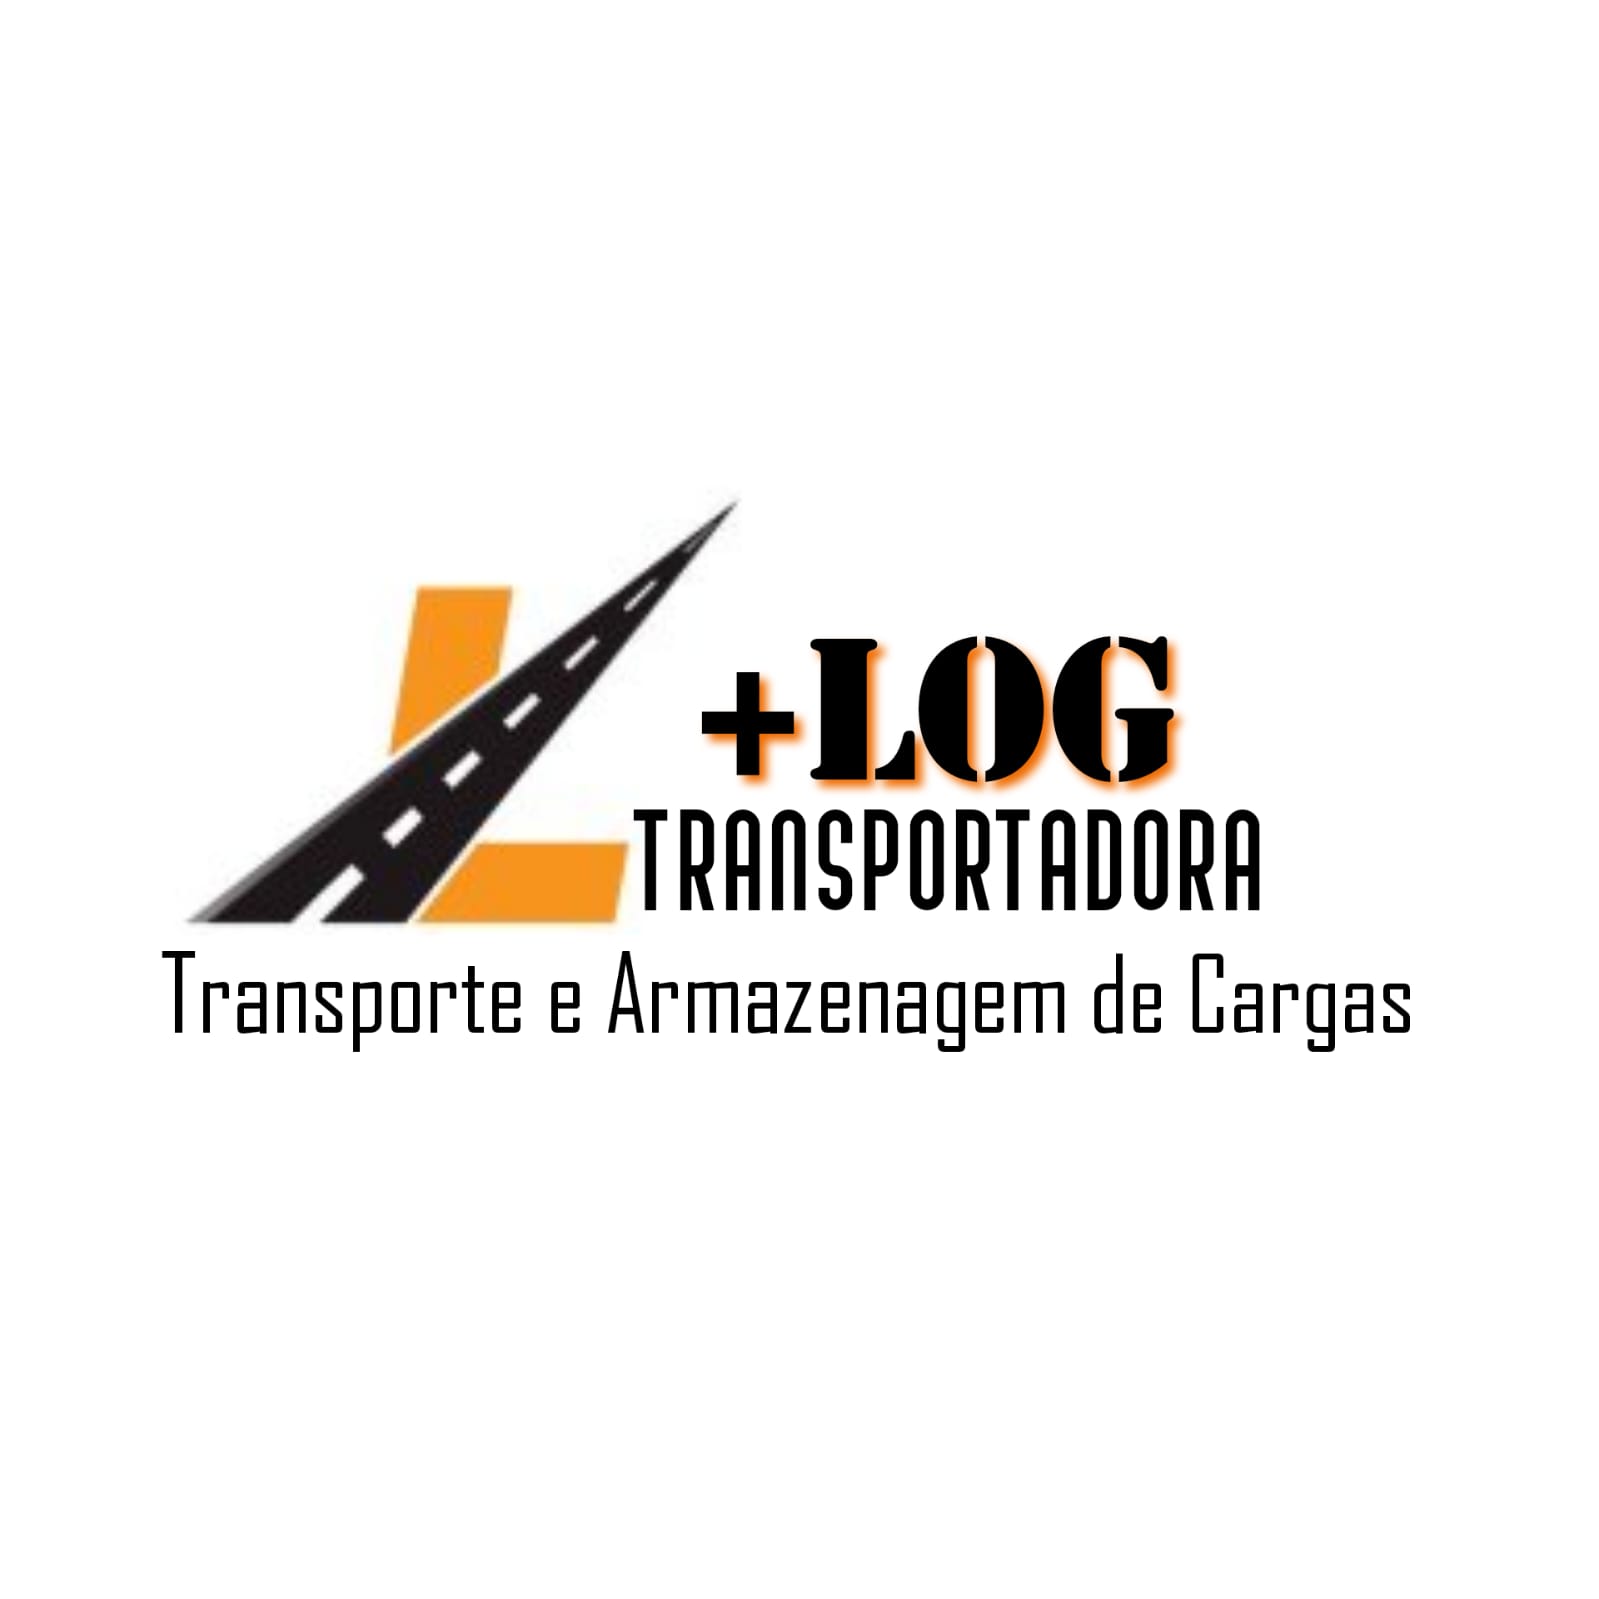 Transportadora + LOG TRANSPORTADORA